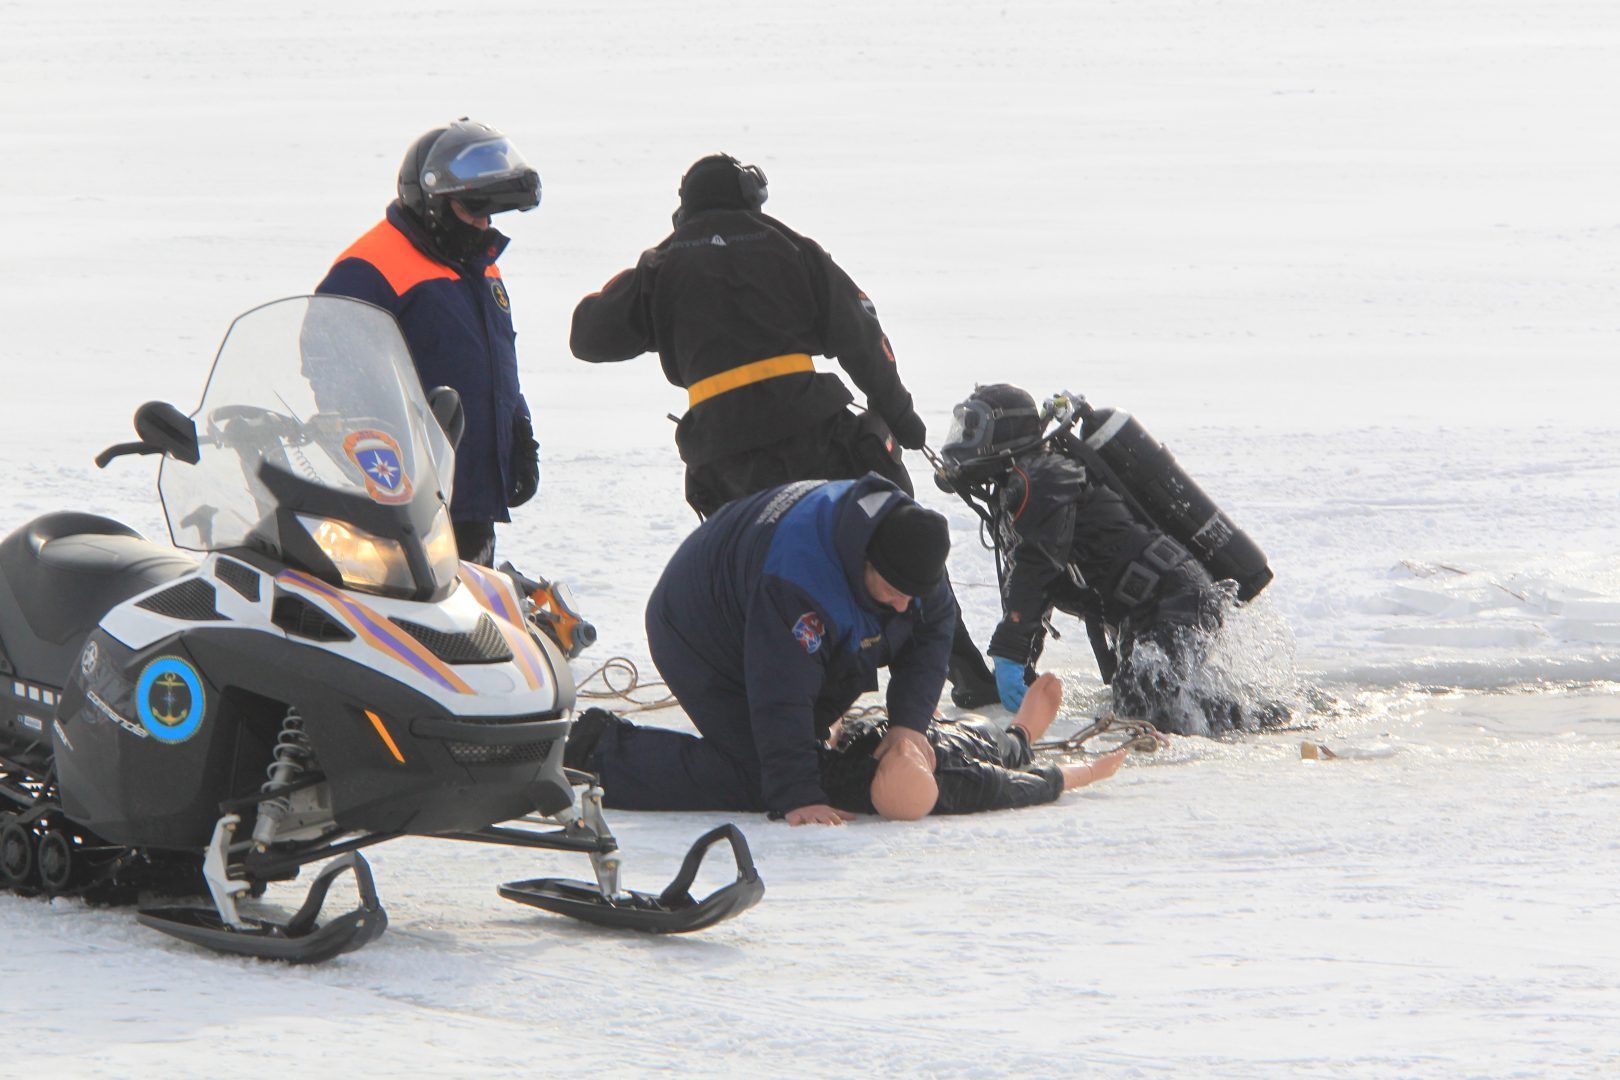 Неподалеку водолазы обнаружили провалившегося под лед и оказывают ему помощь. Фото: Владимир Смоляков